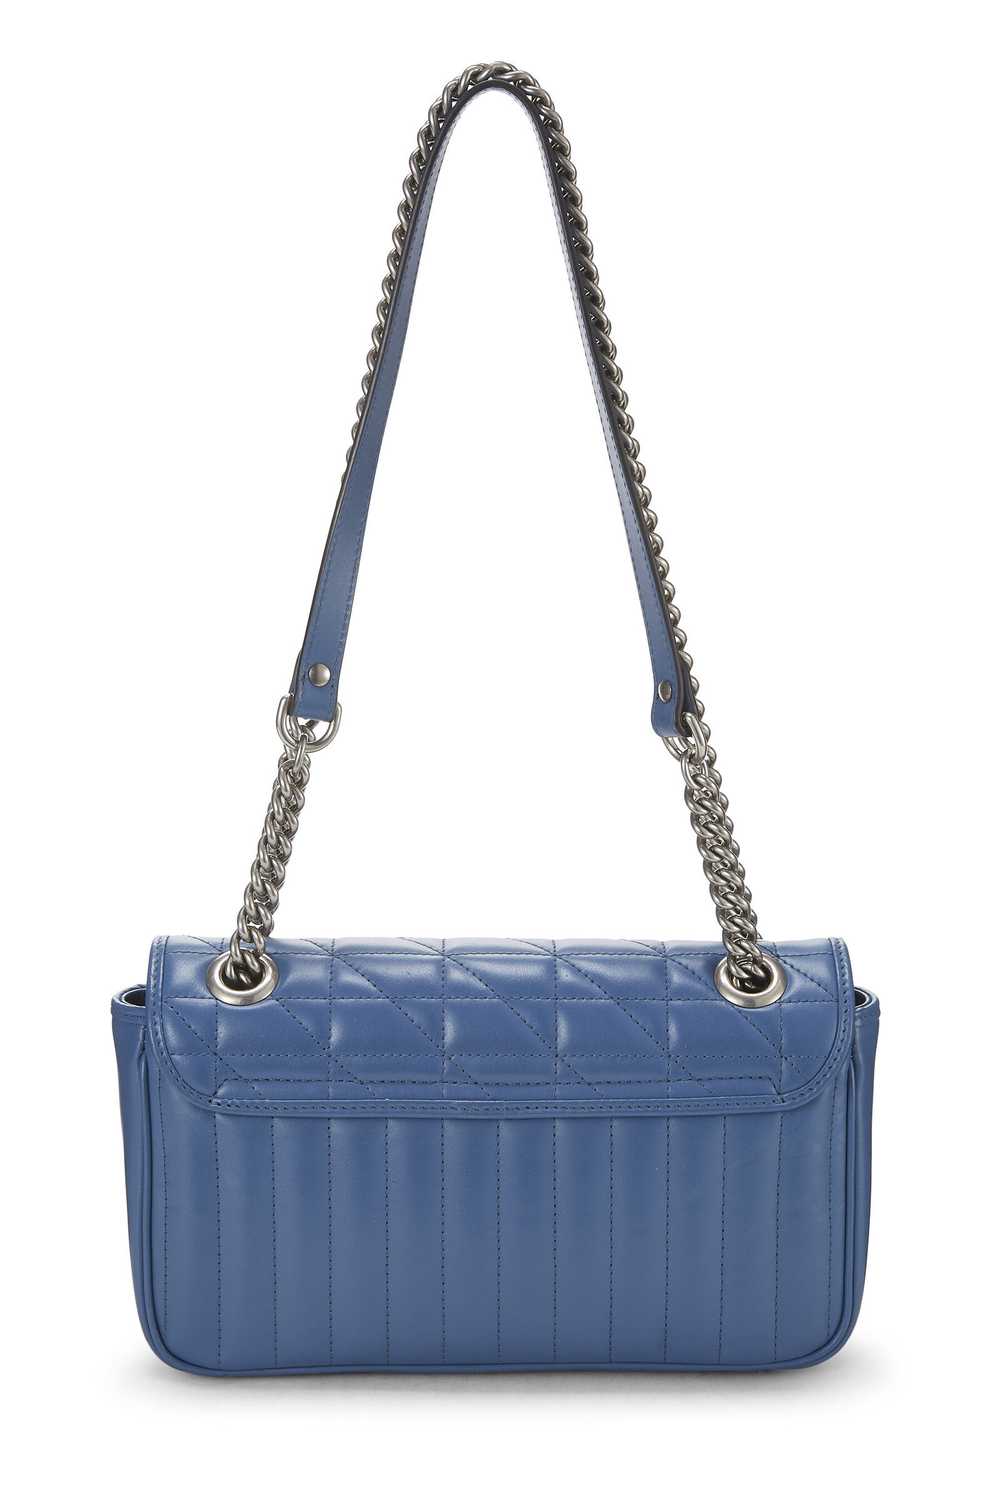 Blue Leather Marmont Matelassé Shoulder Bag - image 4